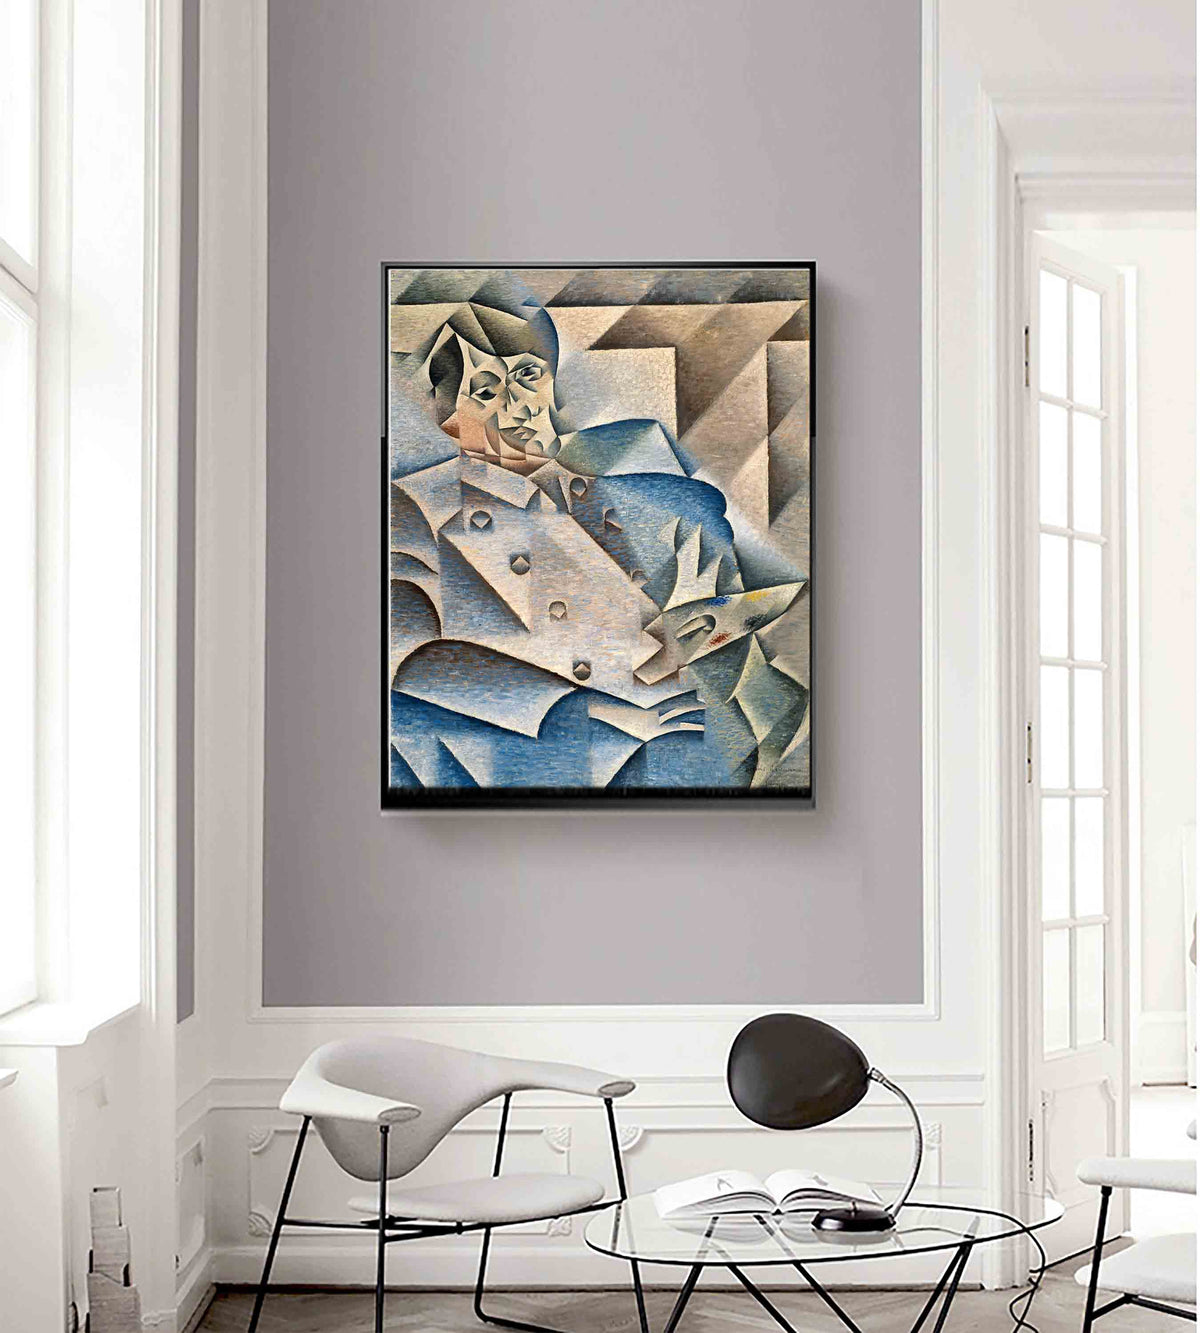 Portrait of Pablo Picasso by Juan Gris